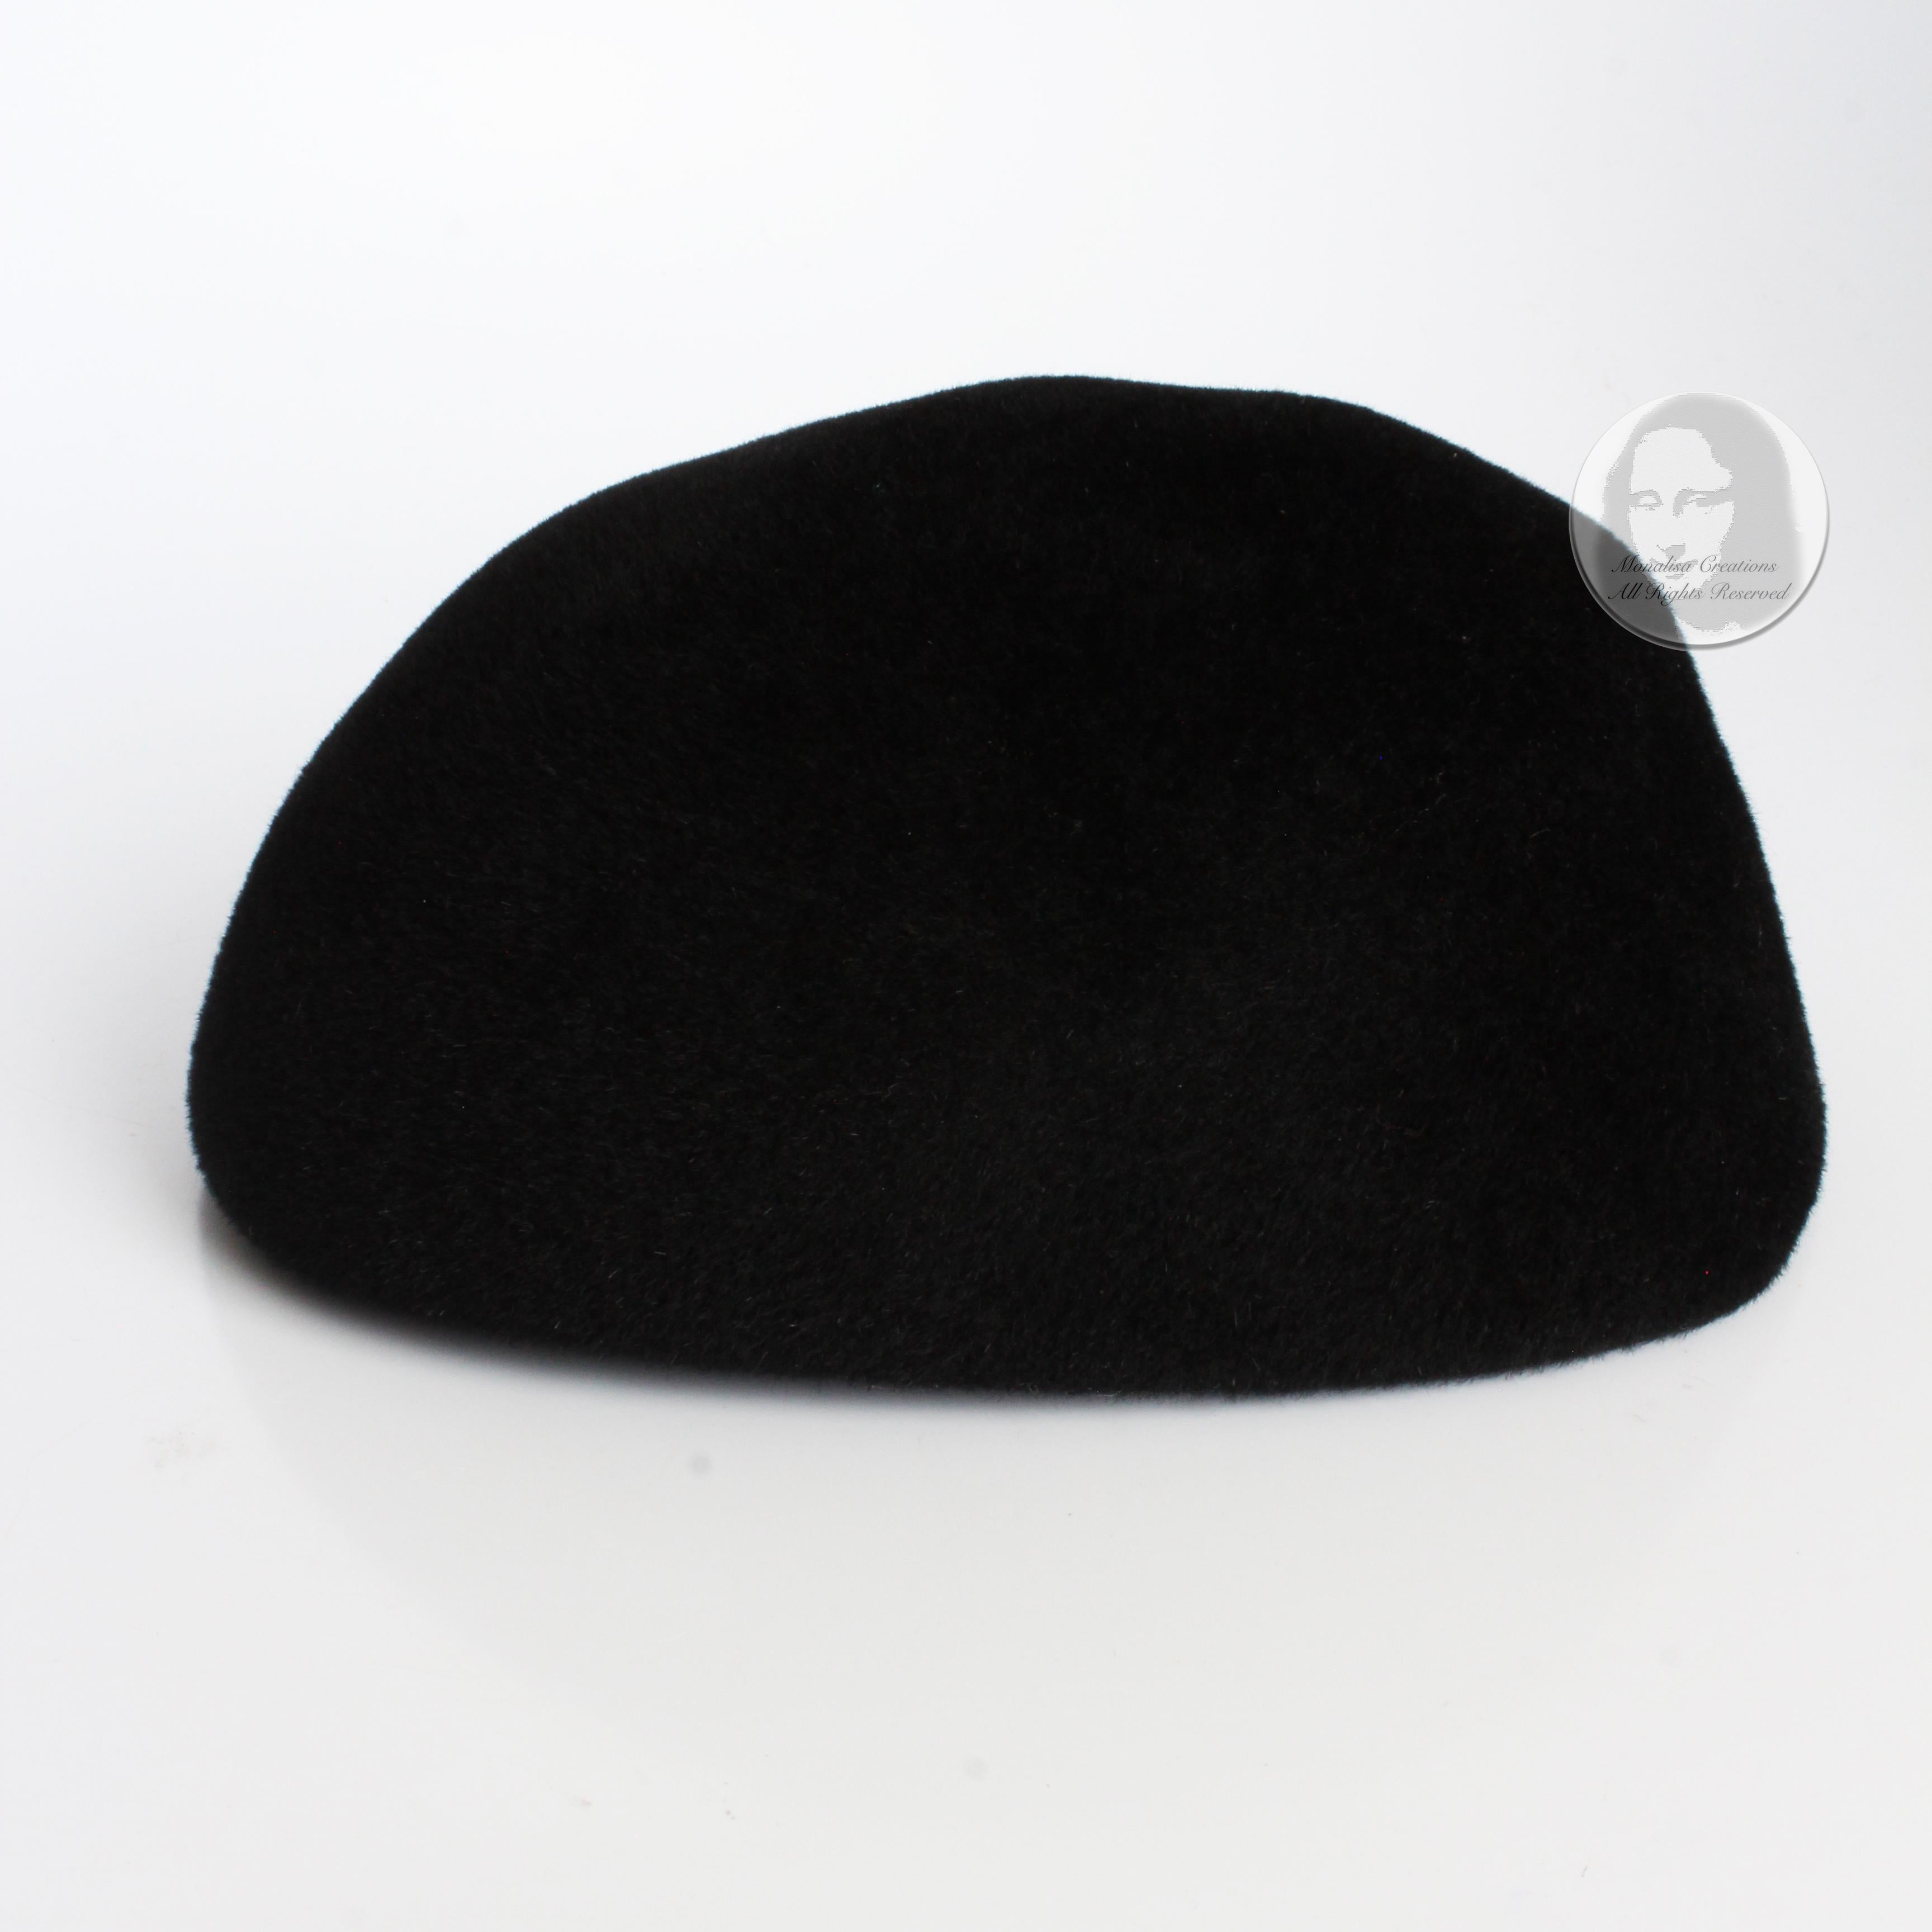 Frank Olive for I. Magnin Hat Calot Juliette Black Velour Vintage Cocktail Hat For Sale 1